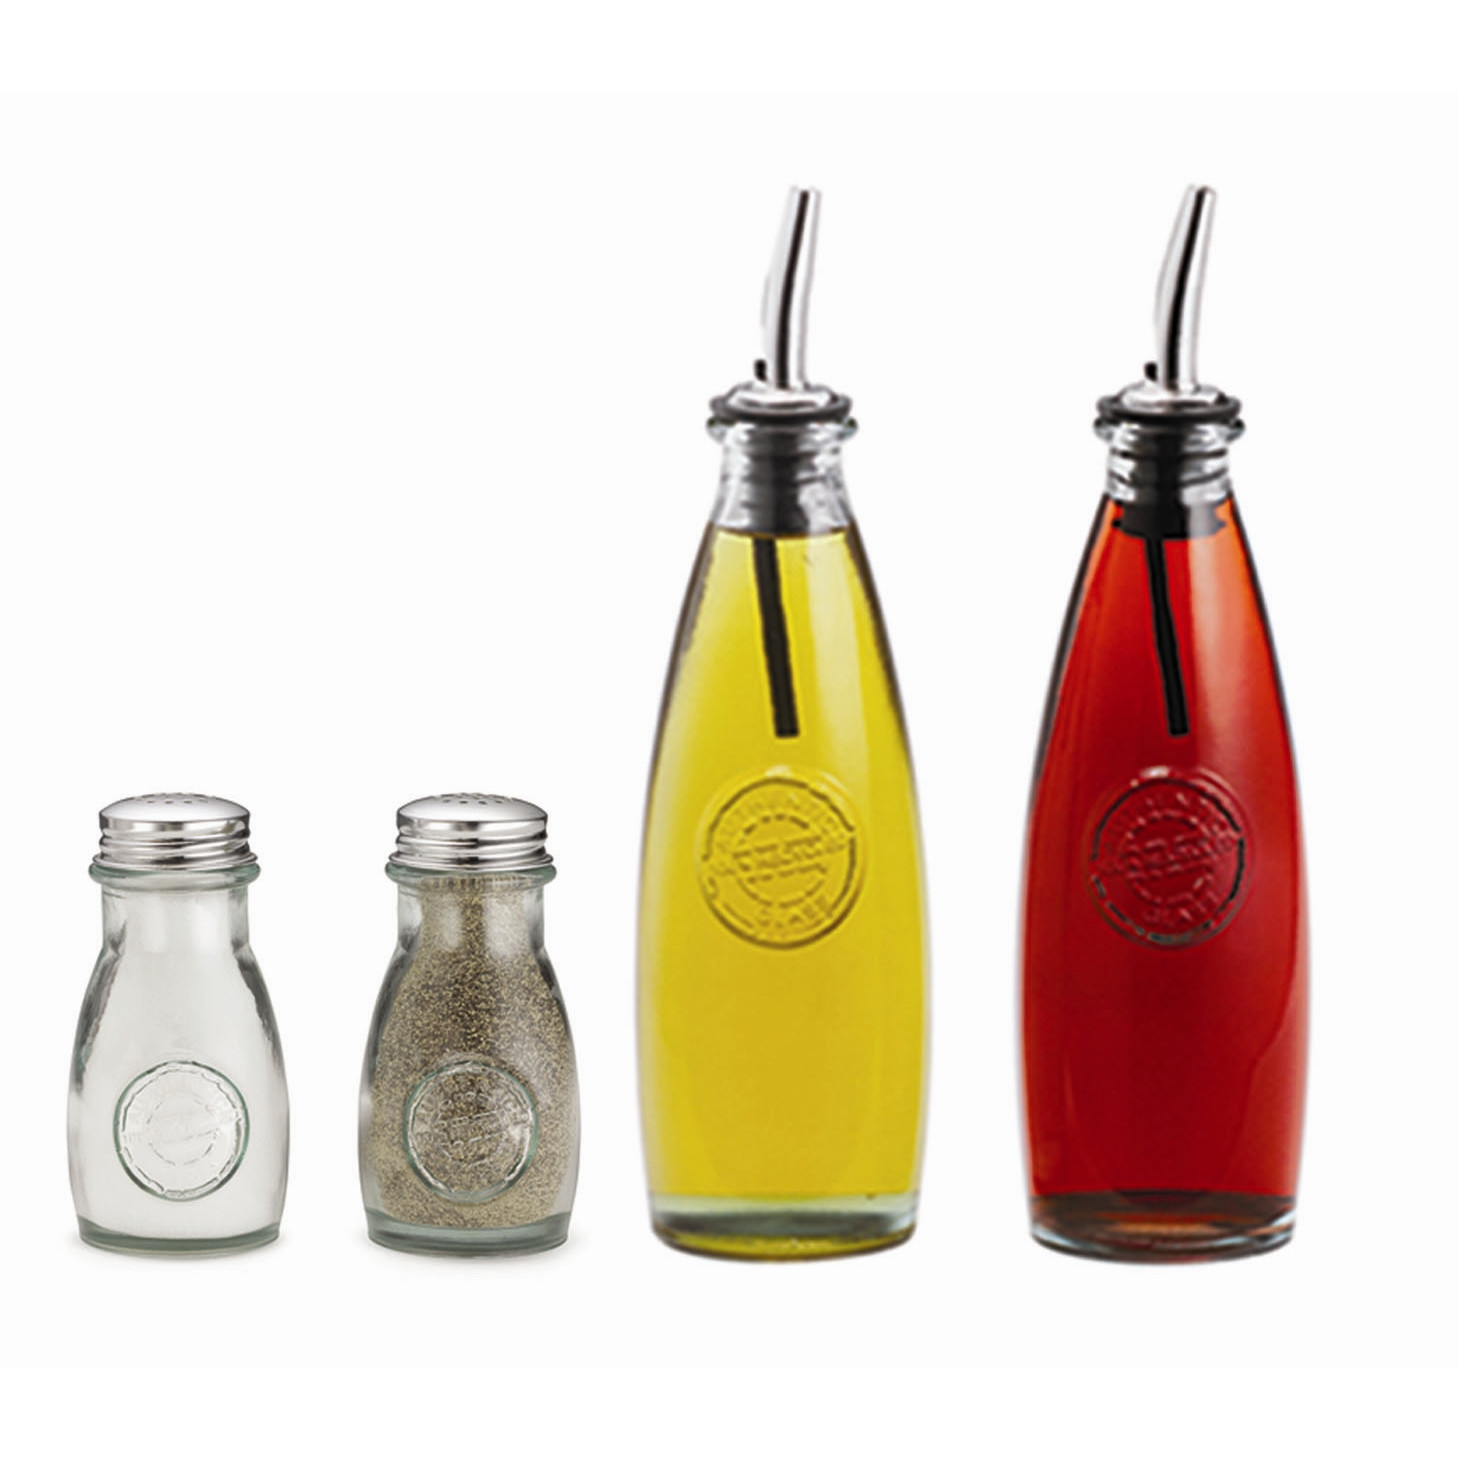 Vintage oil and vinegar bottles